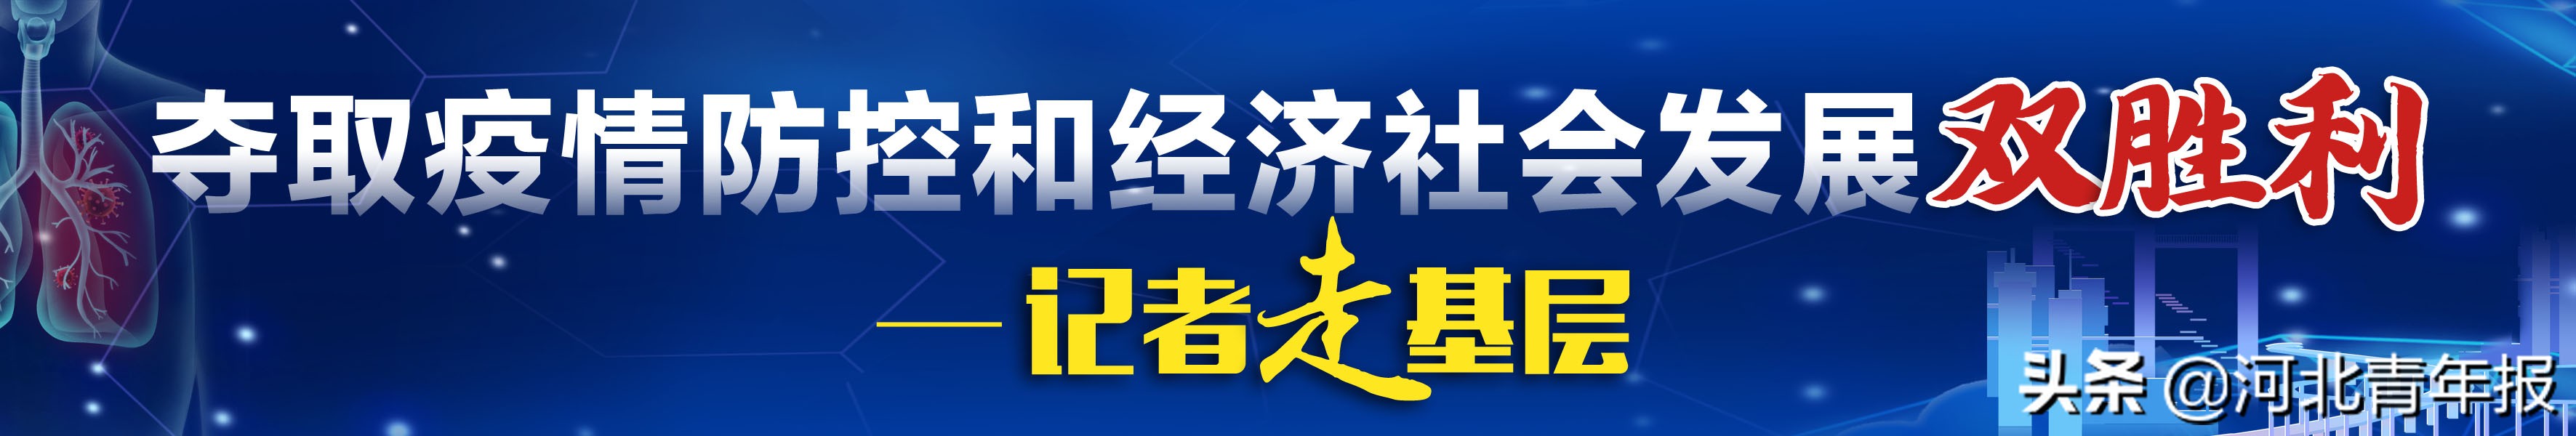 诺亚人力资源招聘官网(3月2日起)-深圳富士康现状最新信息